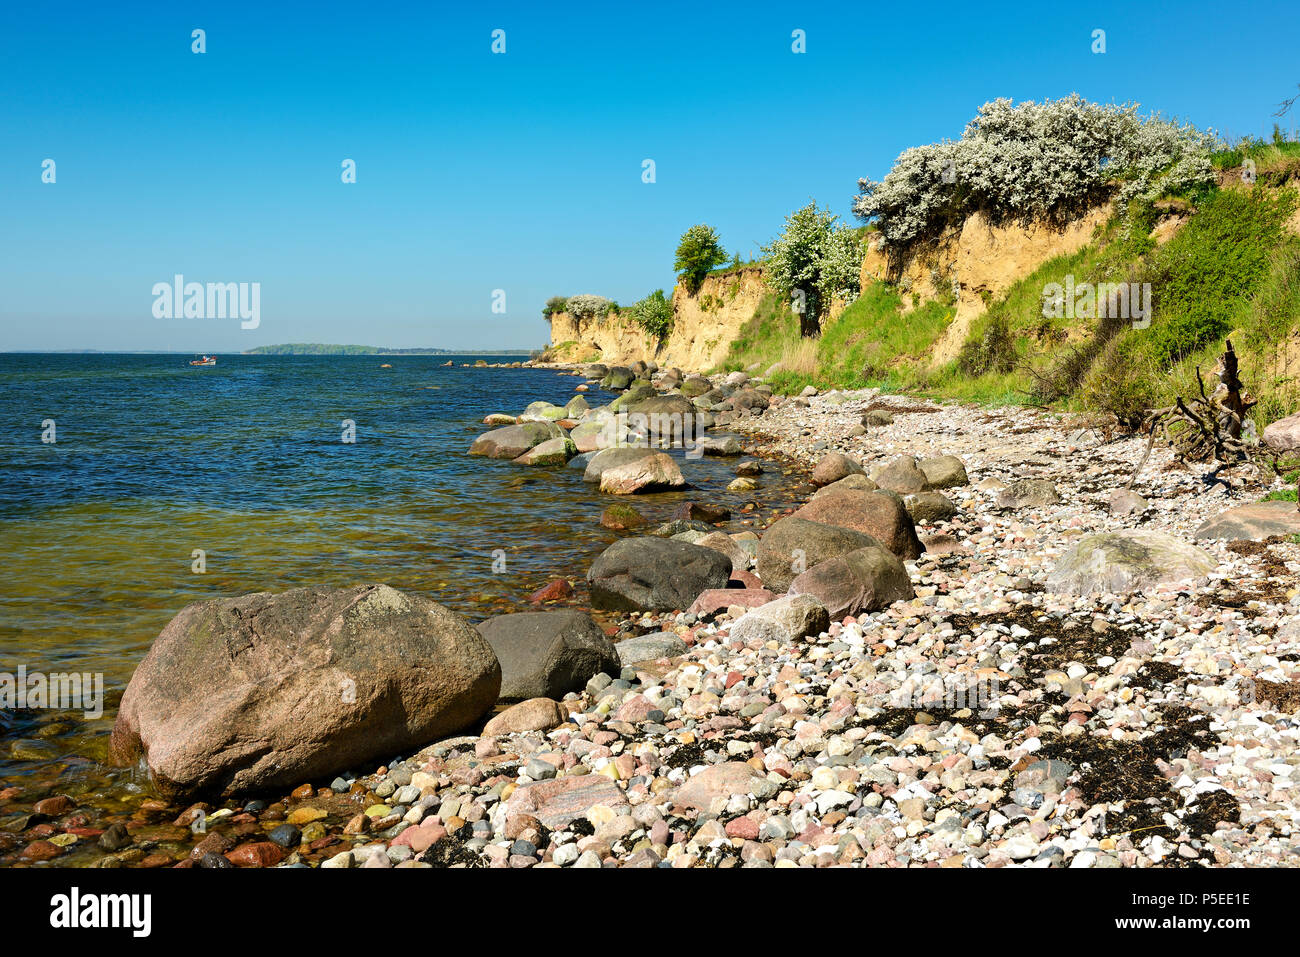 Mar baltico in primavera, massi sulla riva, arbusti fioriti, ripida costa del Reddevitzer Höft, Mönchgut peninsula, Foto Stock